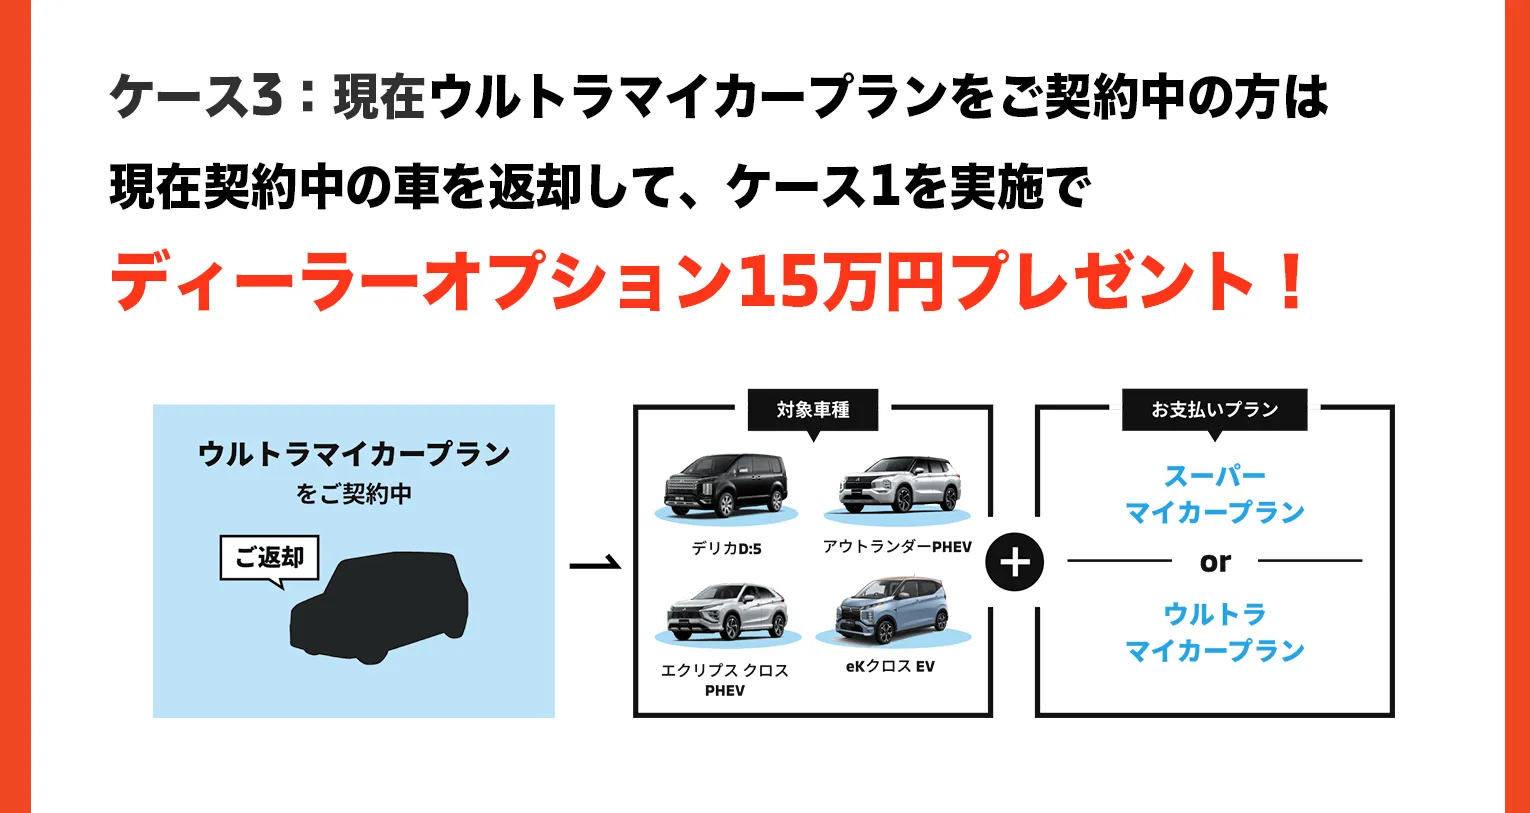 現在ウルトラマイカープランをご契約中の方は現在契約中の車を返却して、ケース1を実施でディーラーオプション15万円プレゼント！